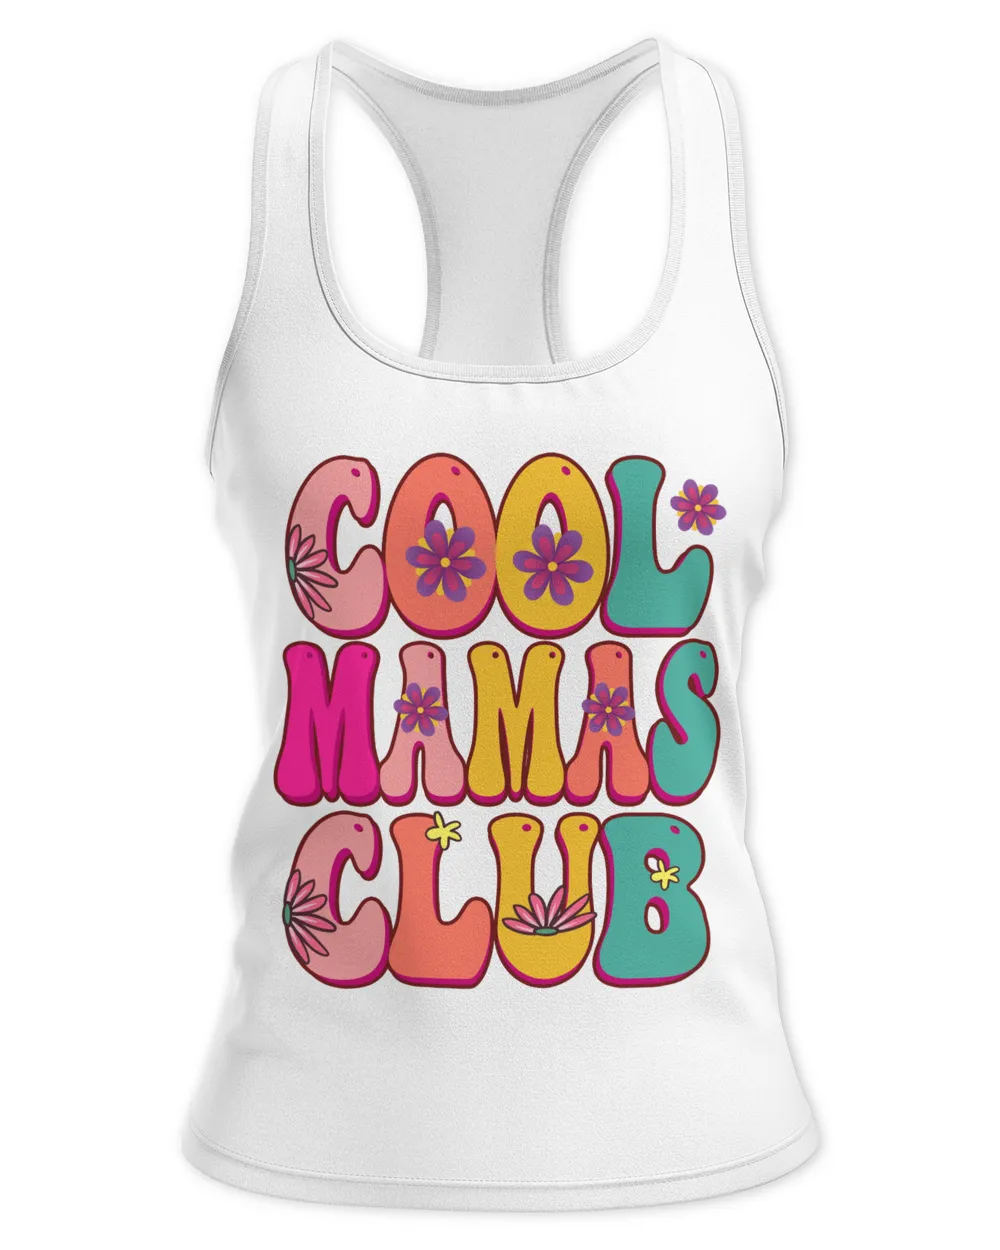 Cool Mamas club